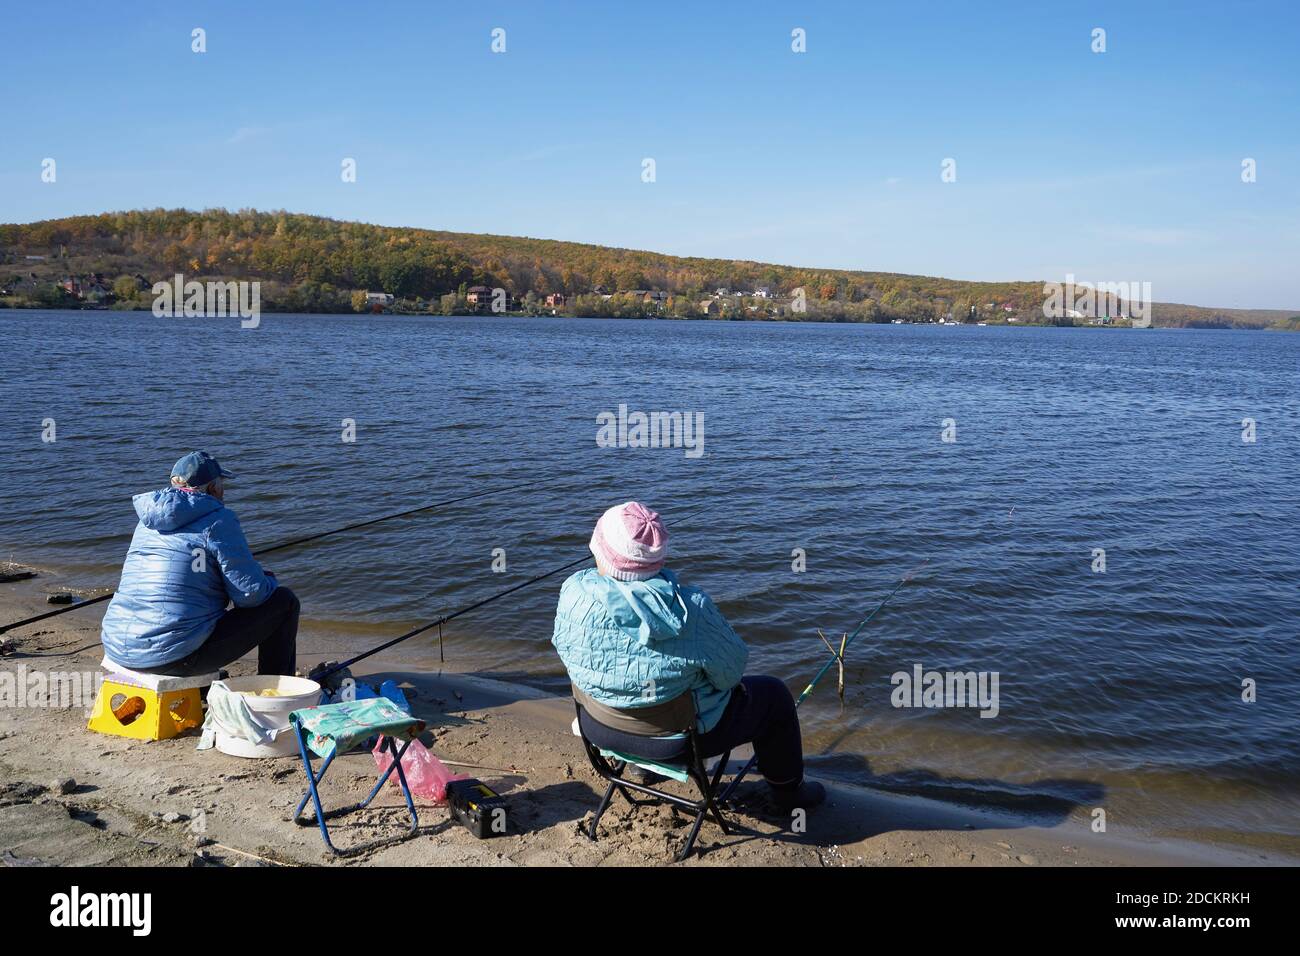 Deux personnes âgées s'assoient sur la rive avec des cannes à pêche et de la pêche Banque D'Images